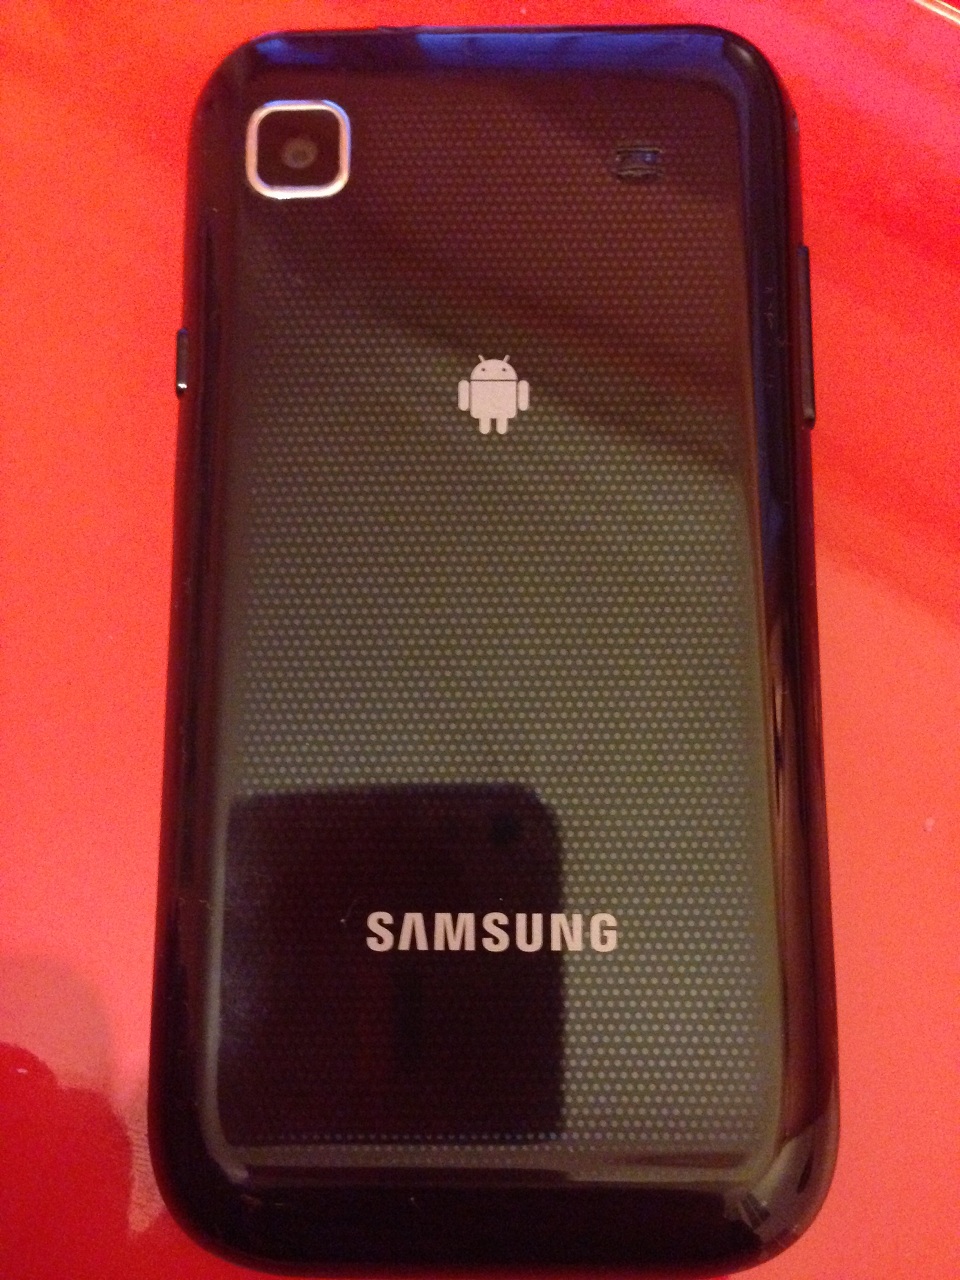  Samsung Galaxy S Çok temiz